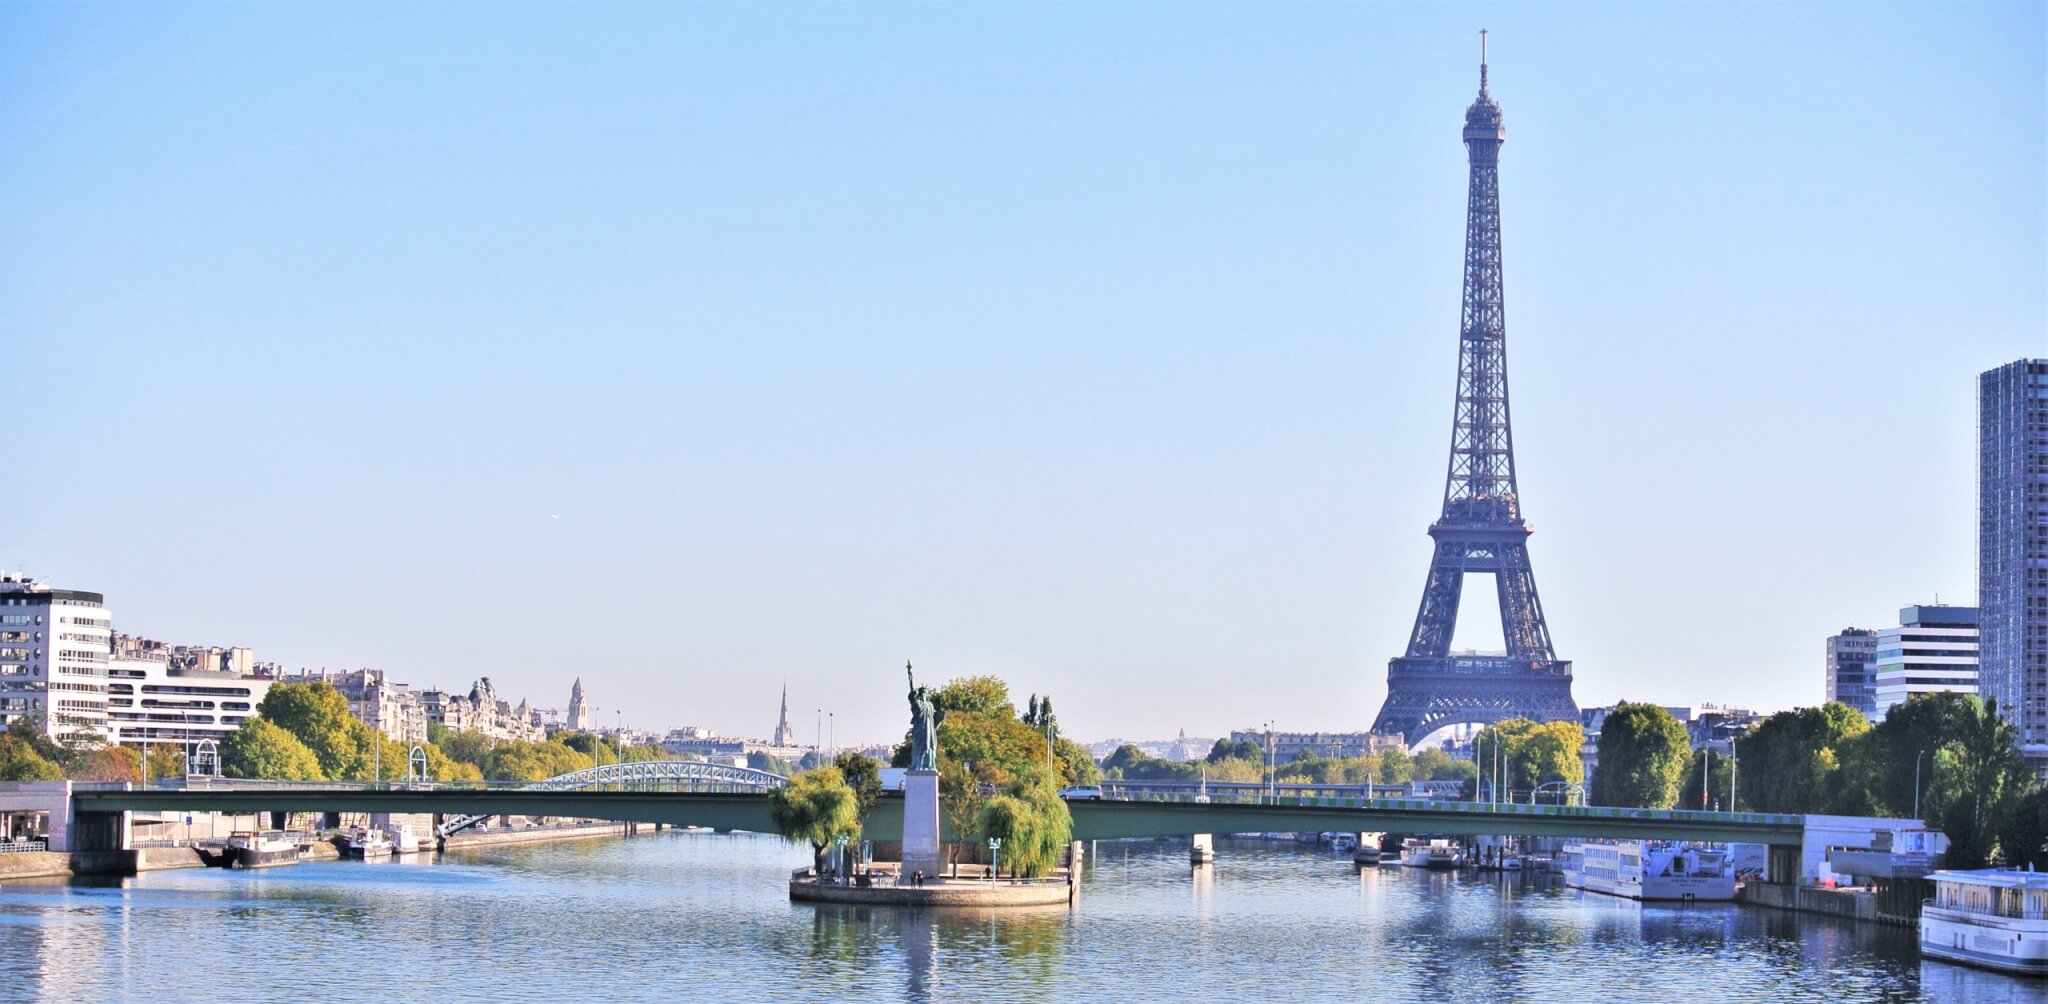 Les tarifs de la tour Eiffel augmentent à partir de ce lundi 17 juin